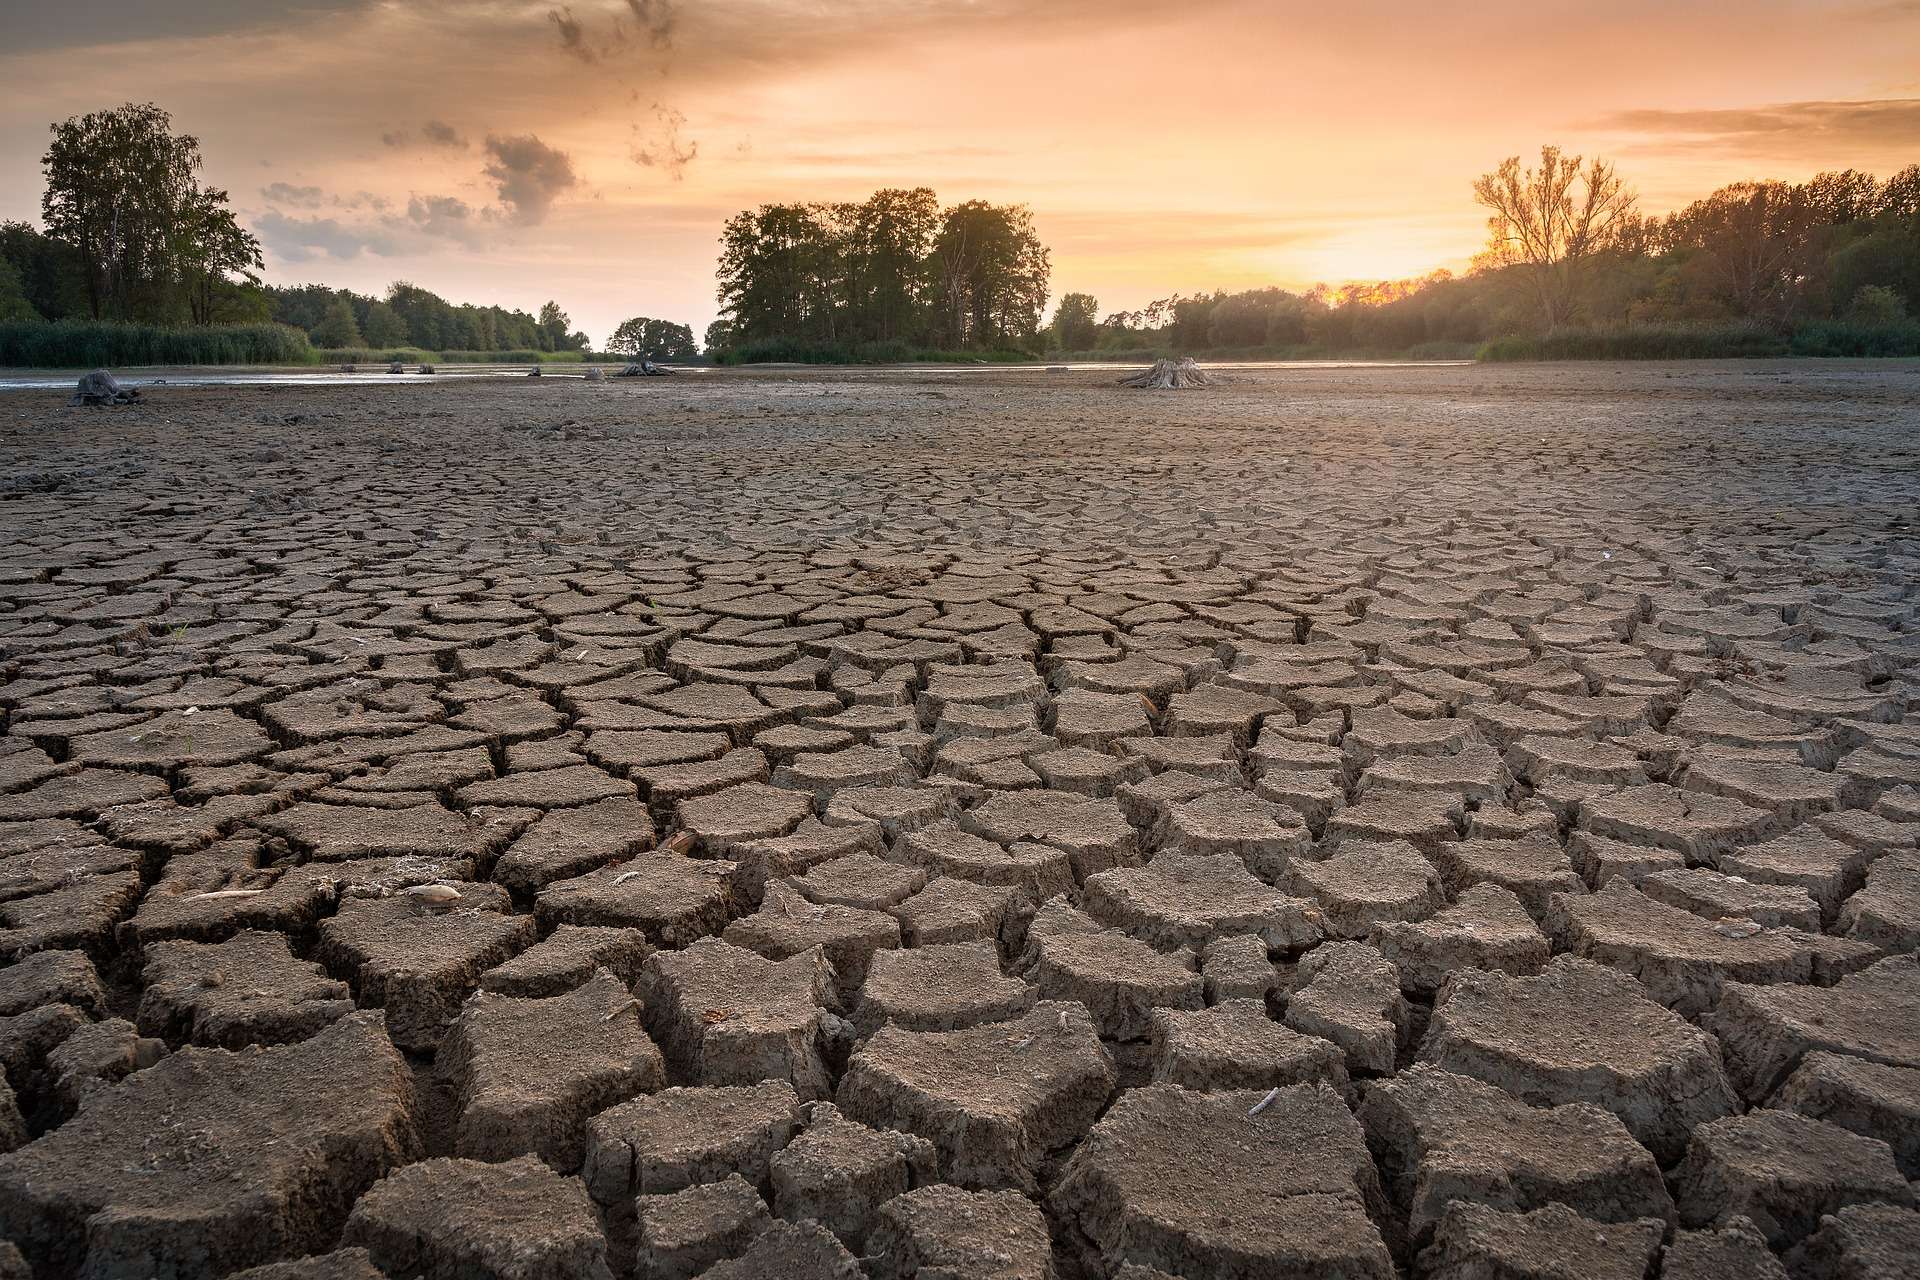 Une nouvelle crise de l’eau menace ces régions de France où la sécheresse s’intensifie